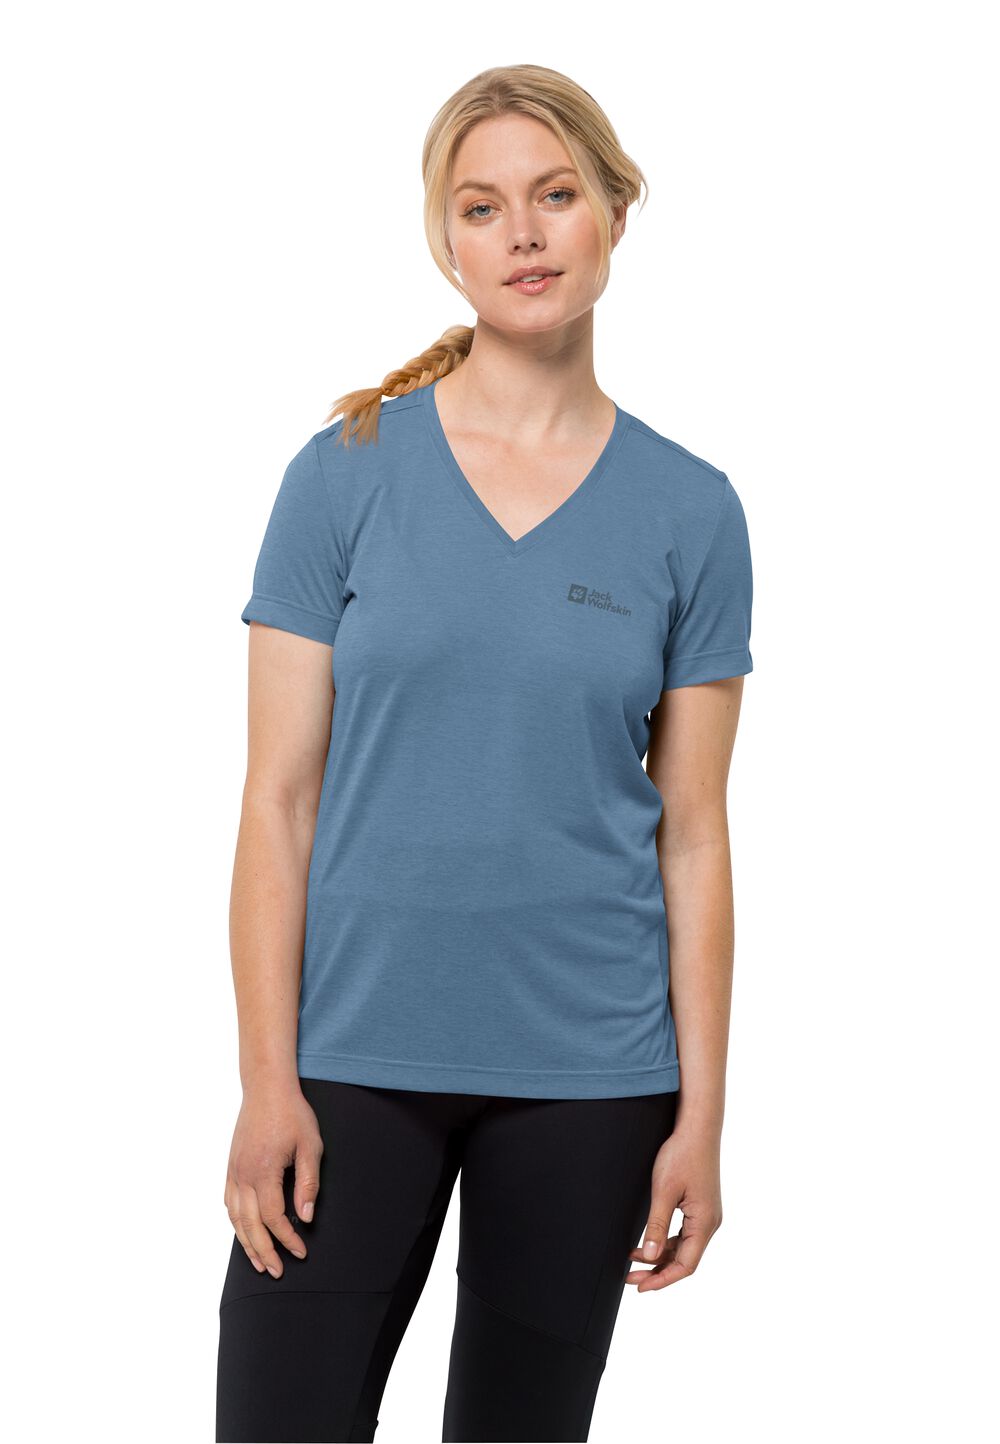 Jack Wolfskin Crosstrail T-Shirt Women Functioneel shirt Dames XXL elemental blue elemental blue